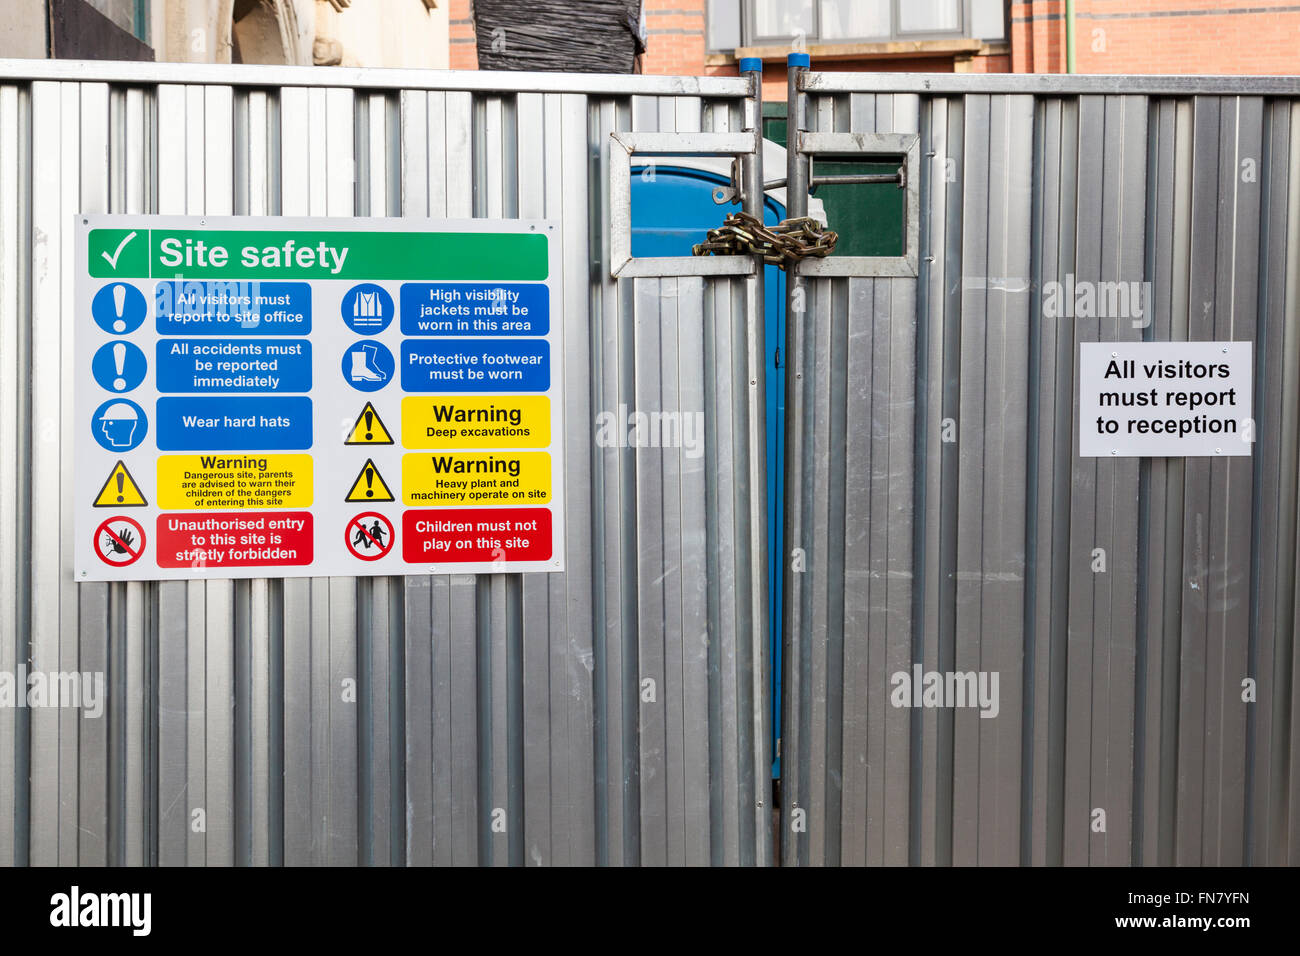 Sito Avvisi di sicurezza sul cantiere di scherma, Nottingham, Inghilterra, Regno Unito Foto Stock